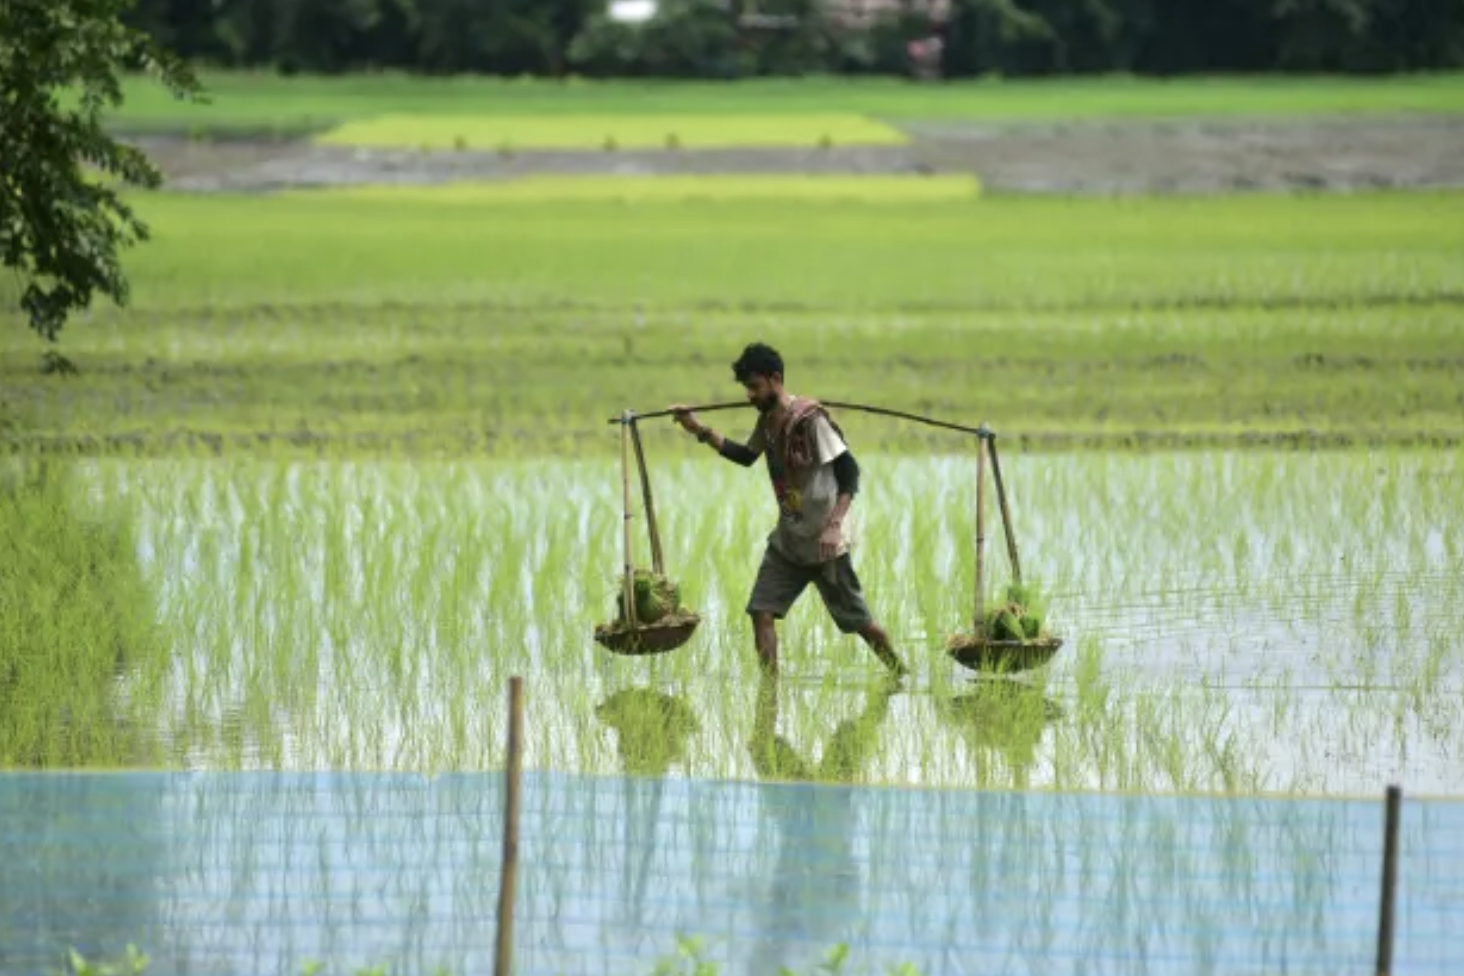 Ấn Độ cấm xuất khẩu gạo gây biến động ra sao trên thị trường thế giới? - Ảnh 3.